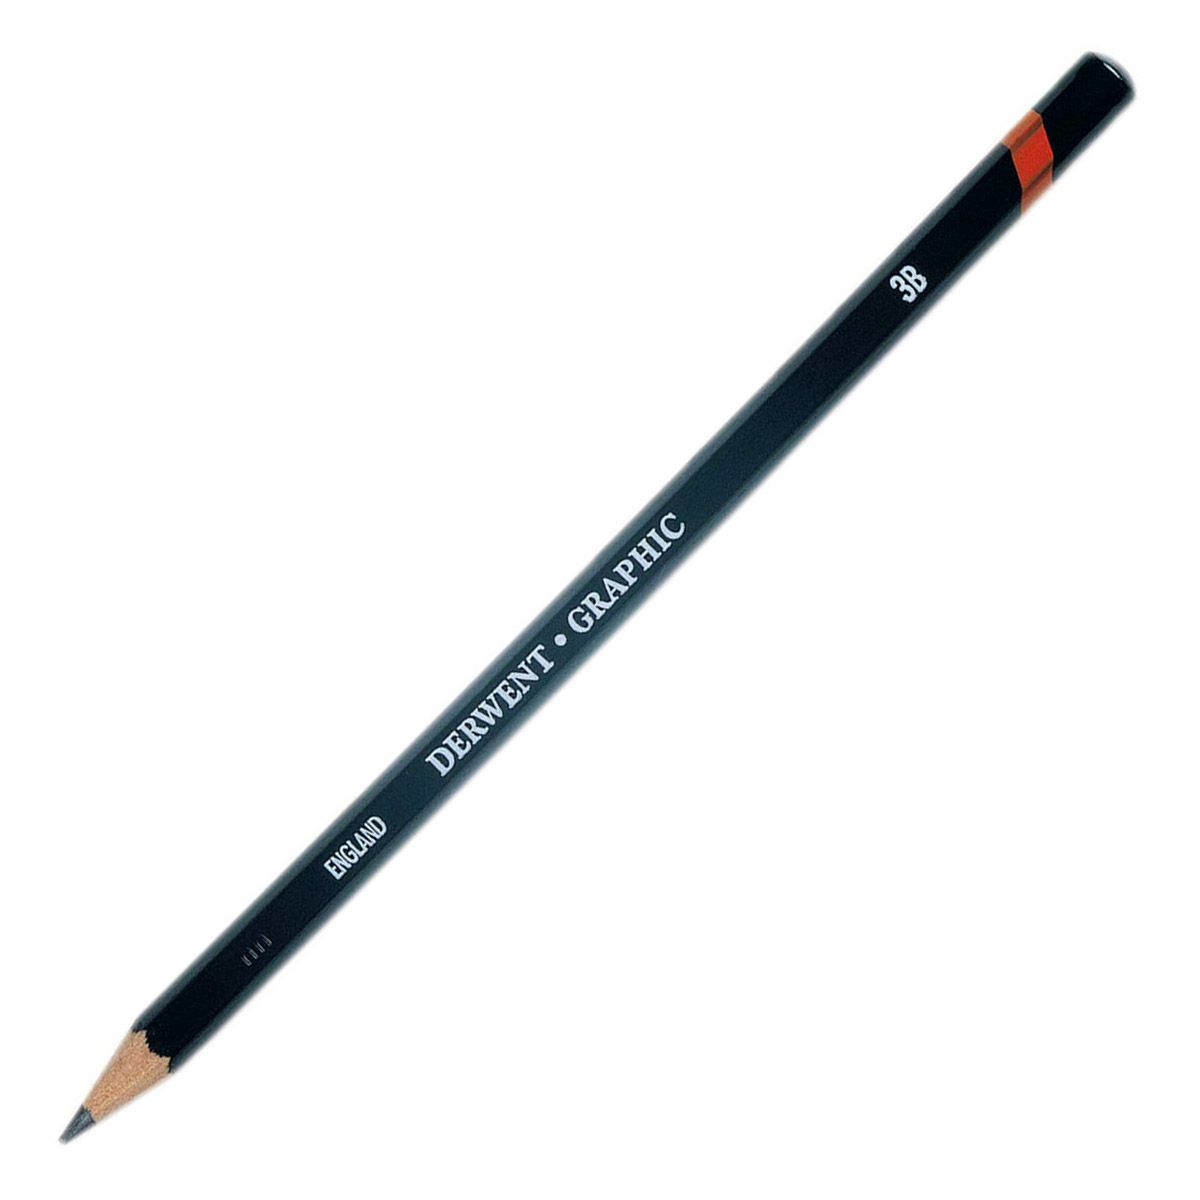 Derwent Graphic Pencil - 3B